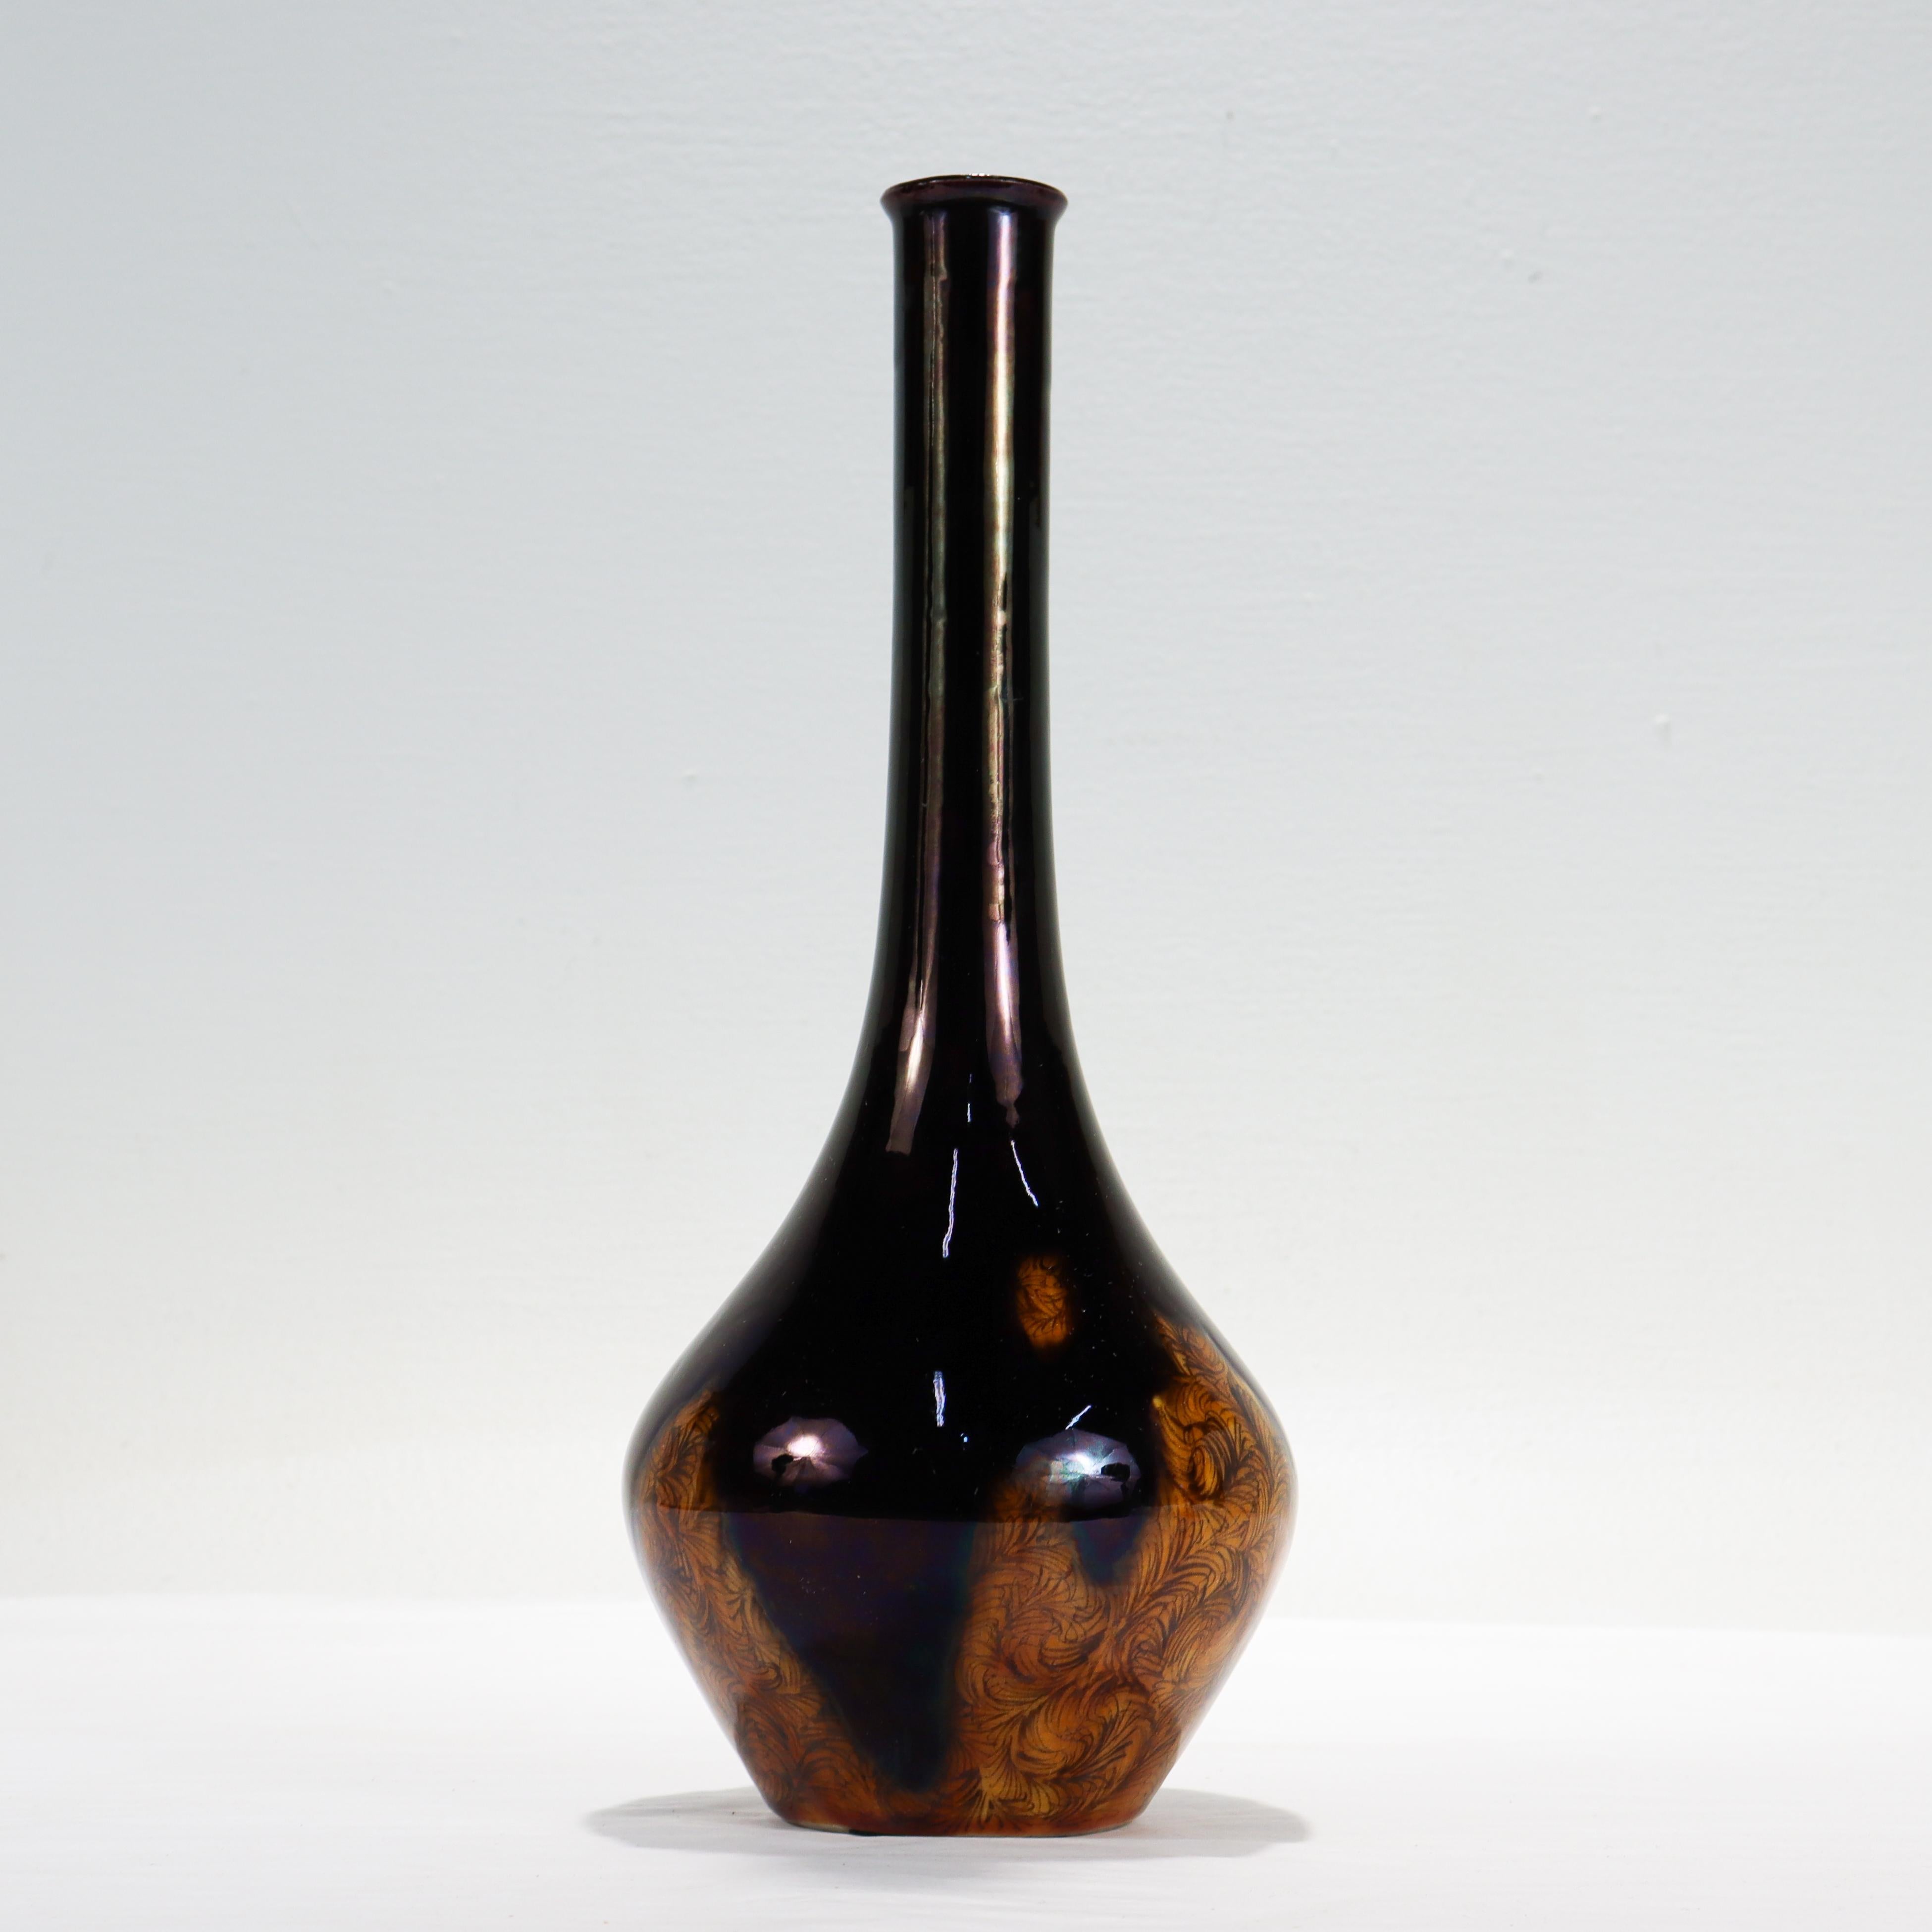 Eine schöne Vintage-Vase aus japanischem Kutani-Porzellan.

Von Mitsui Tamekichi dem 3. (?????3?). 

Geboren als Mitsui Eiichi im Jahr 1935. Er lernte seine Frau während seiner Ausbildung bei Kutani-Meister Torijo Kitade kennen, und sie